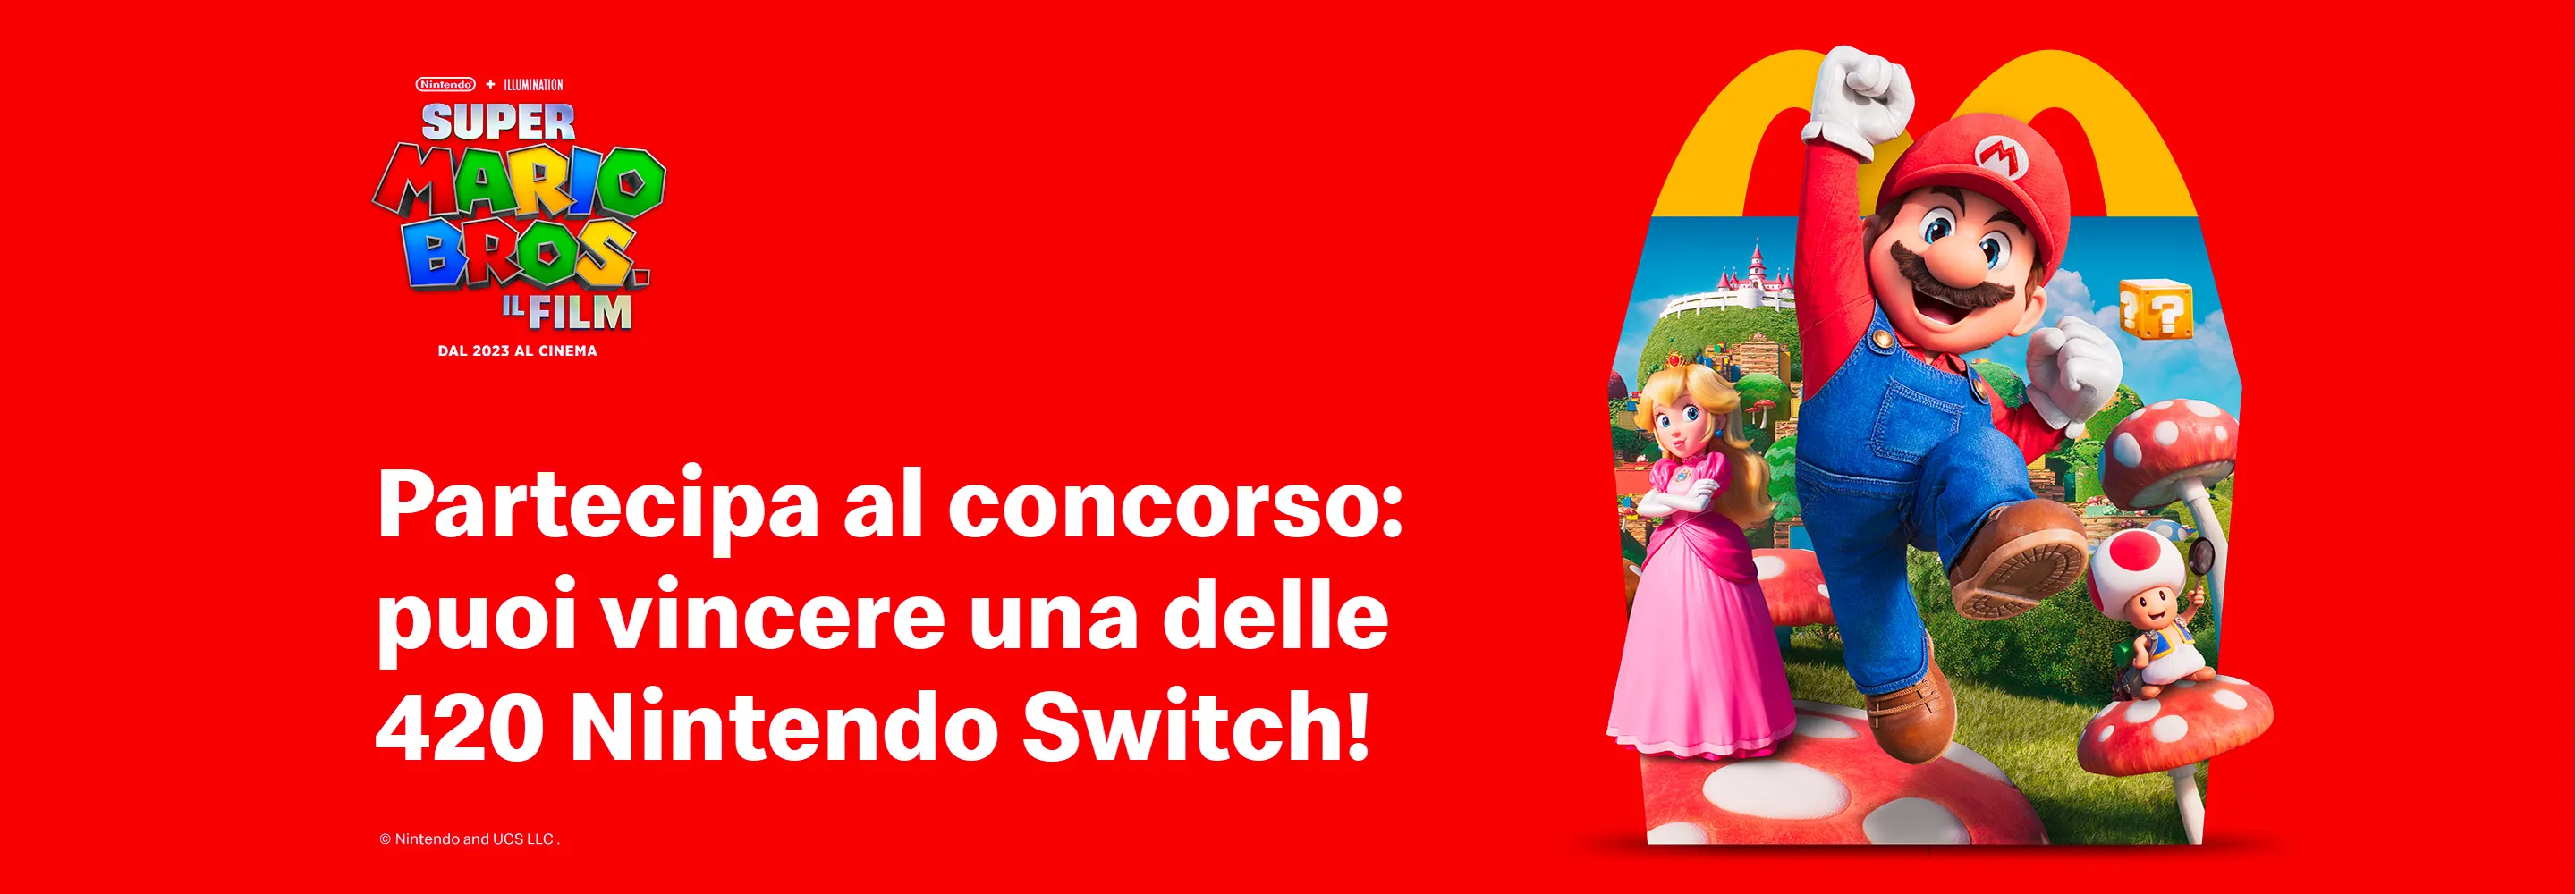 Partecipa al concorso: puoi vincere una delle 420 Nintendo Switch in palio!